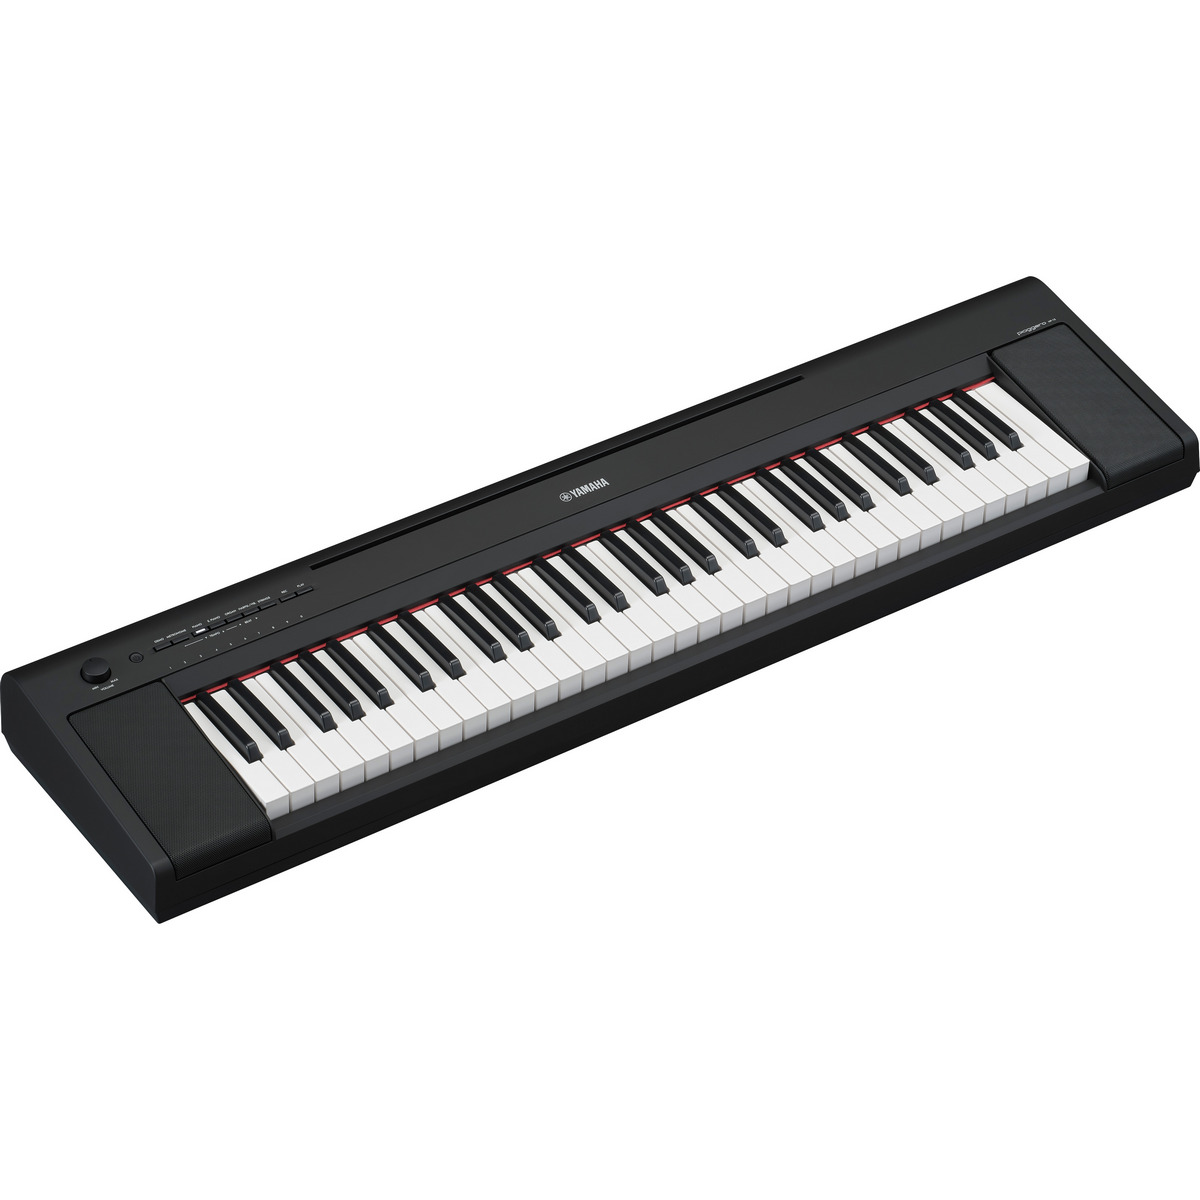 Цифровое пианино Yamaha NP-15 B Piaggero